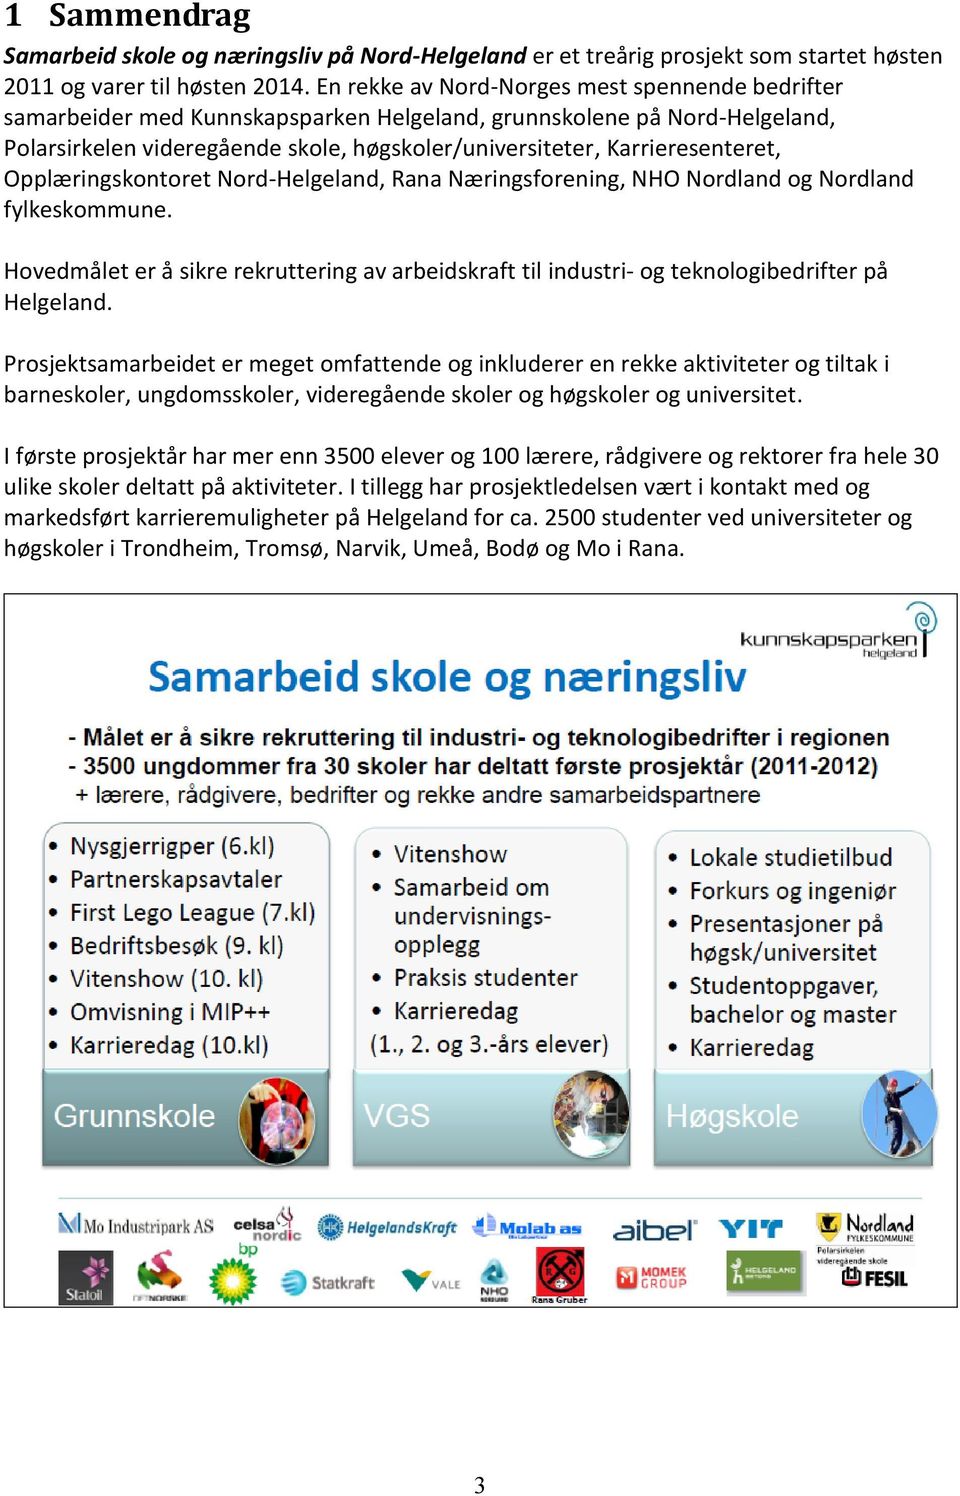 Karrieresenteret, Opplæringskontoret Nord-Helgeland, Rana Næringsforening, NHO Nordland og Nordland fylkeskommune.